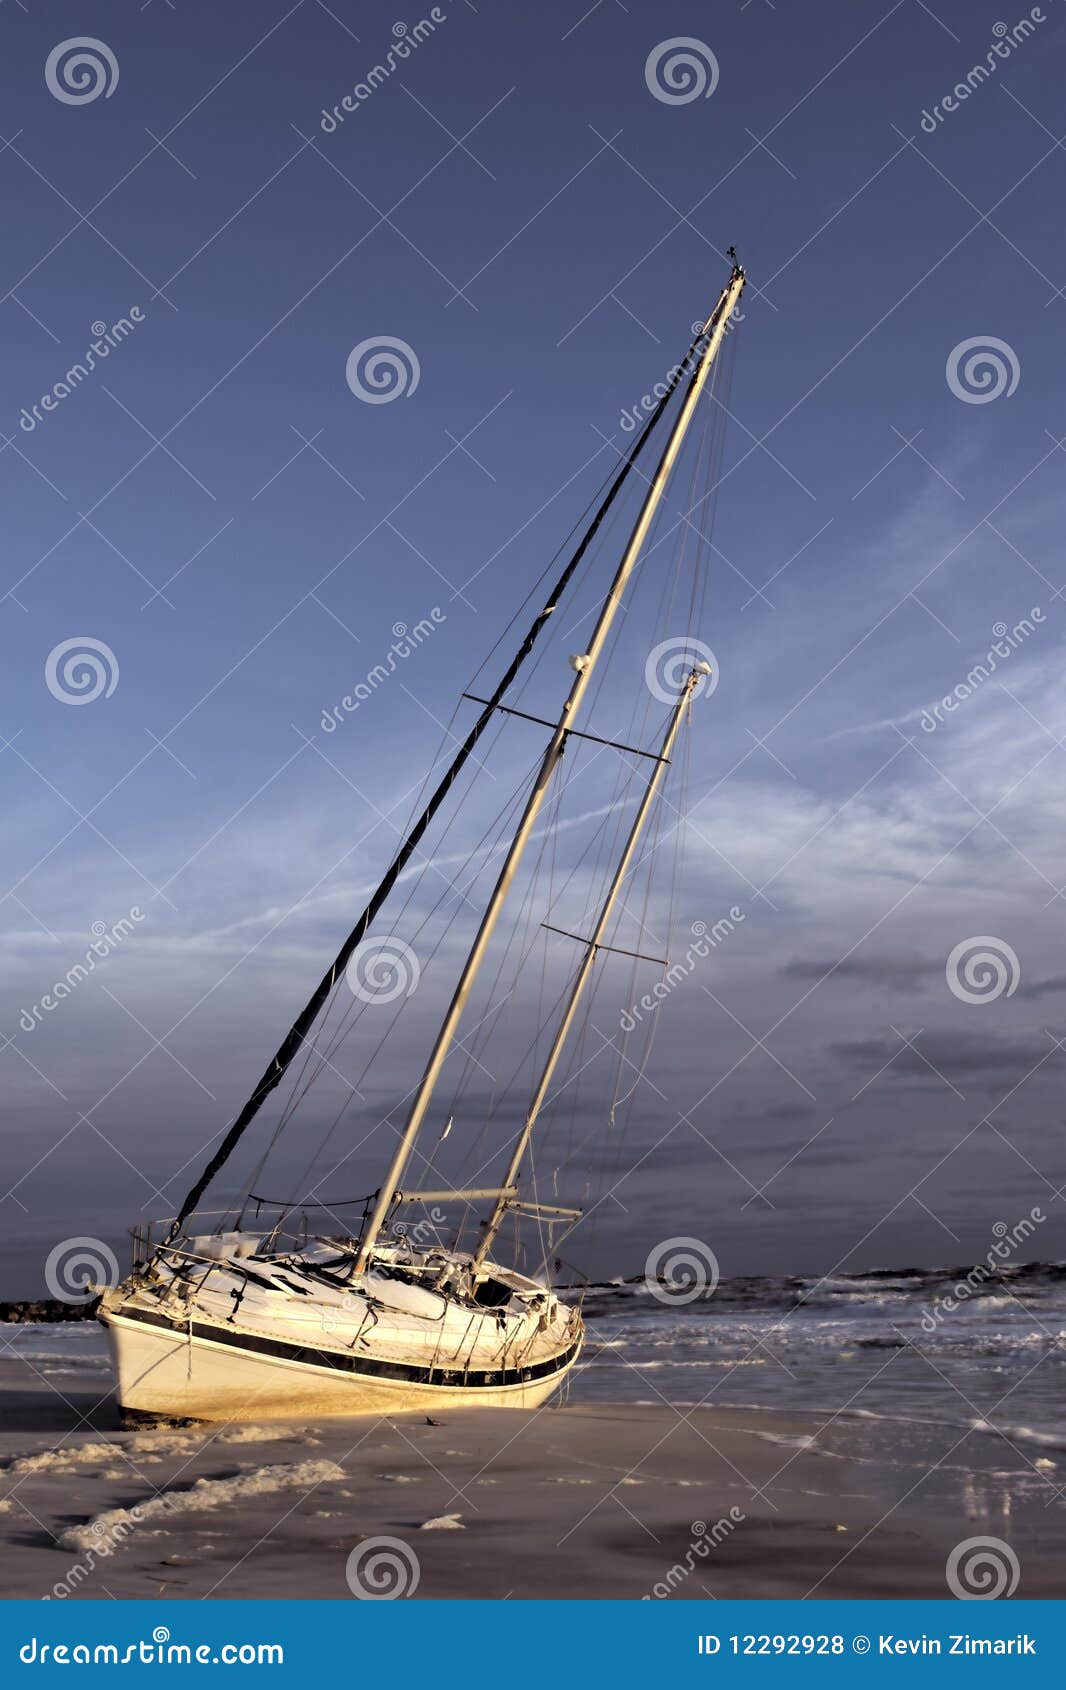 sailboat shipwrecked